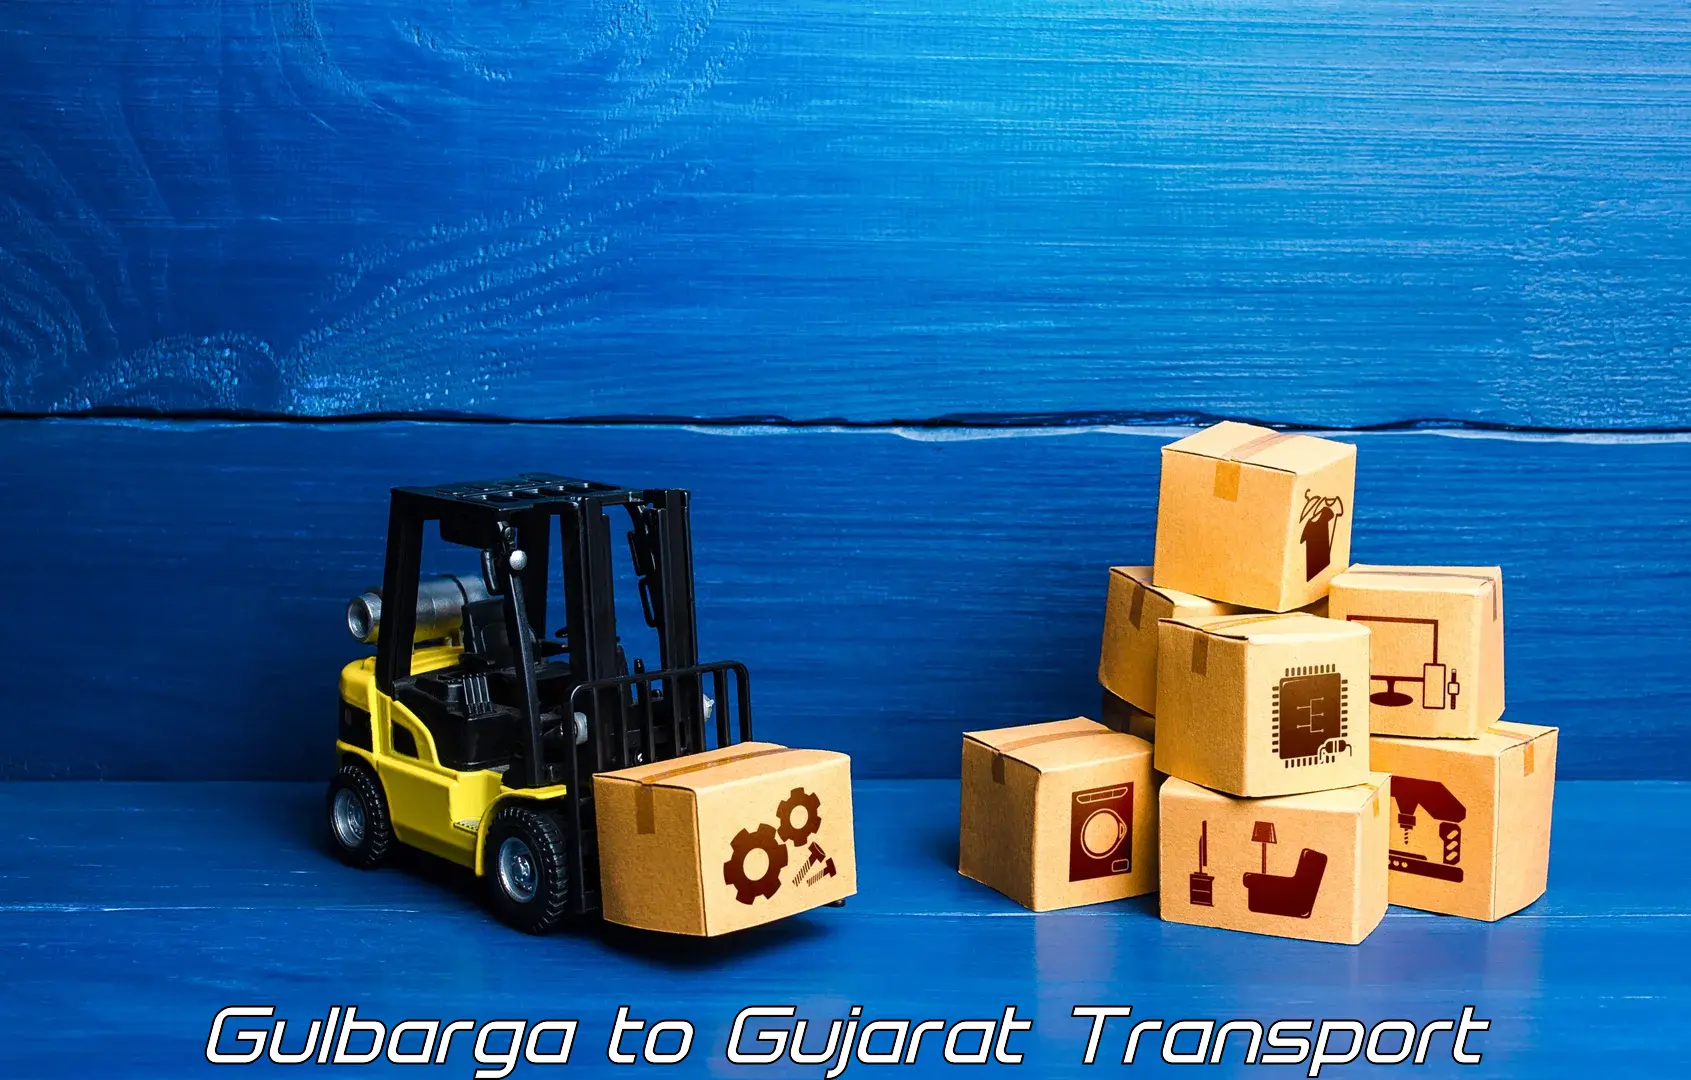 Express transport services Gulbarga to Gandhinagar